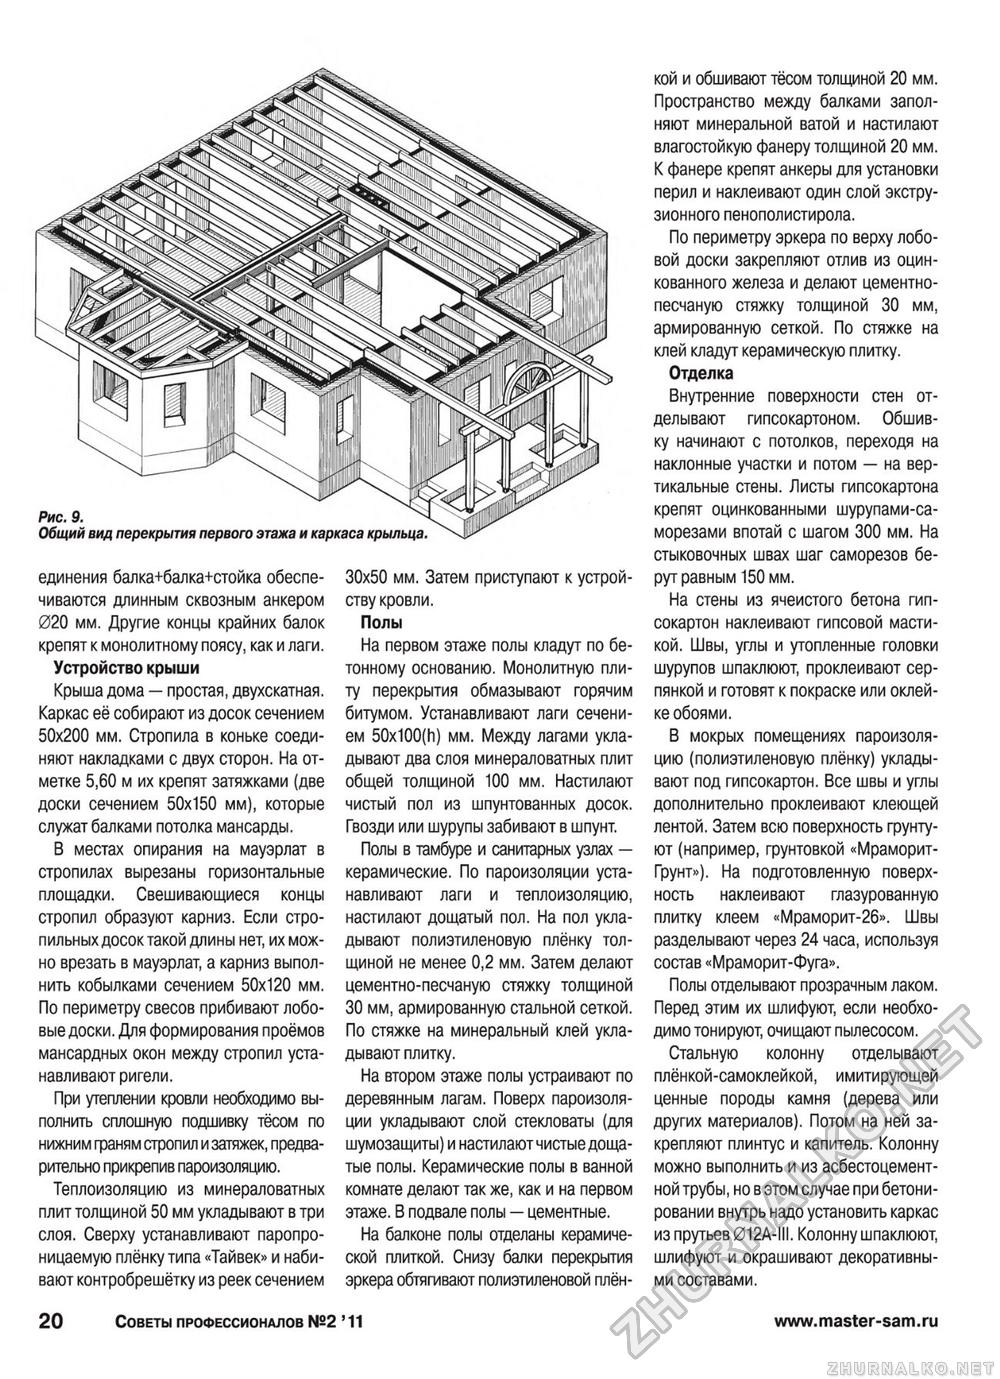 Советы профессионалов 2011-02, страница 20